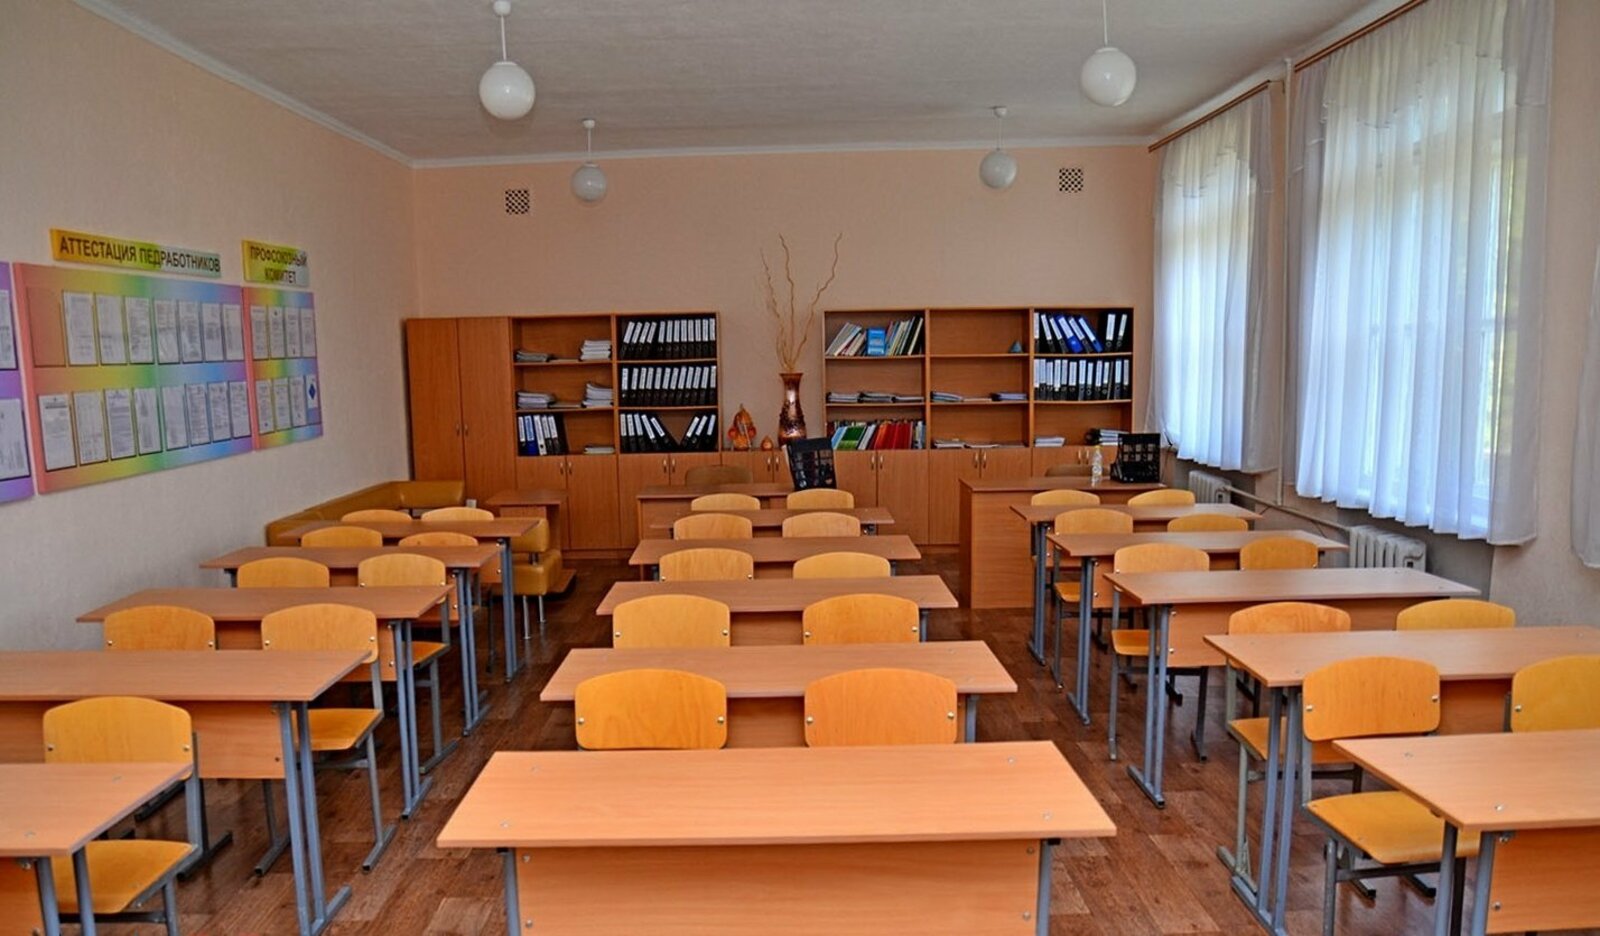 Учителя из Башкирии обвинили в домогательствах